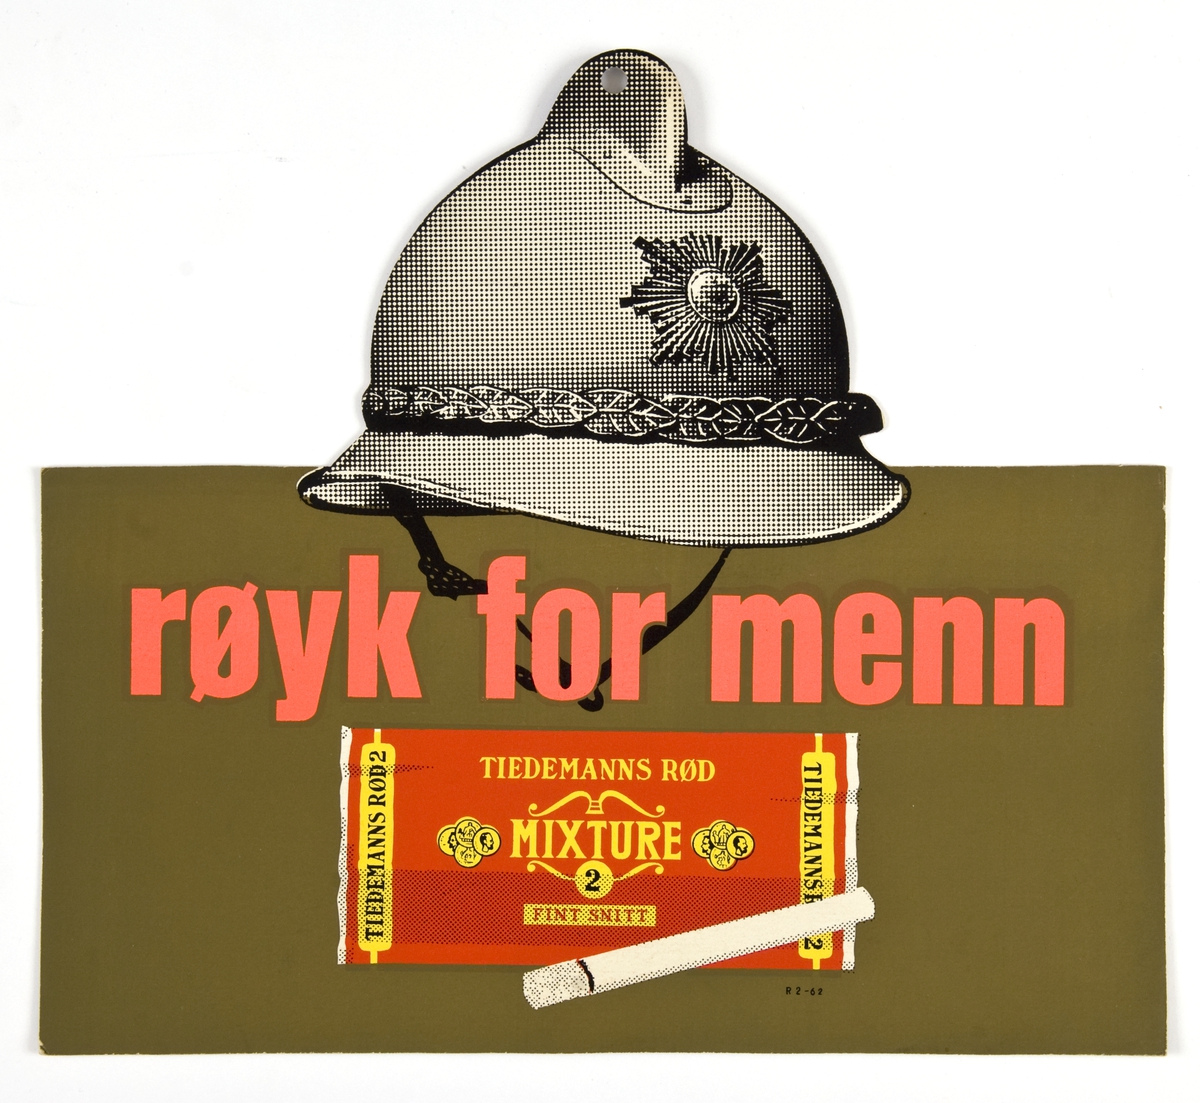 Reklameskilt for Tiedemanns Rød tobakk.